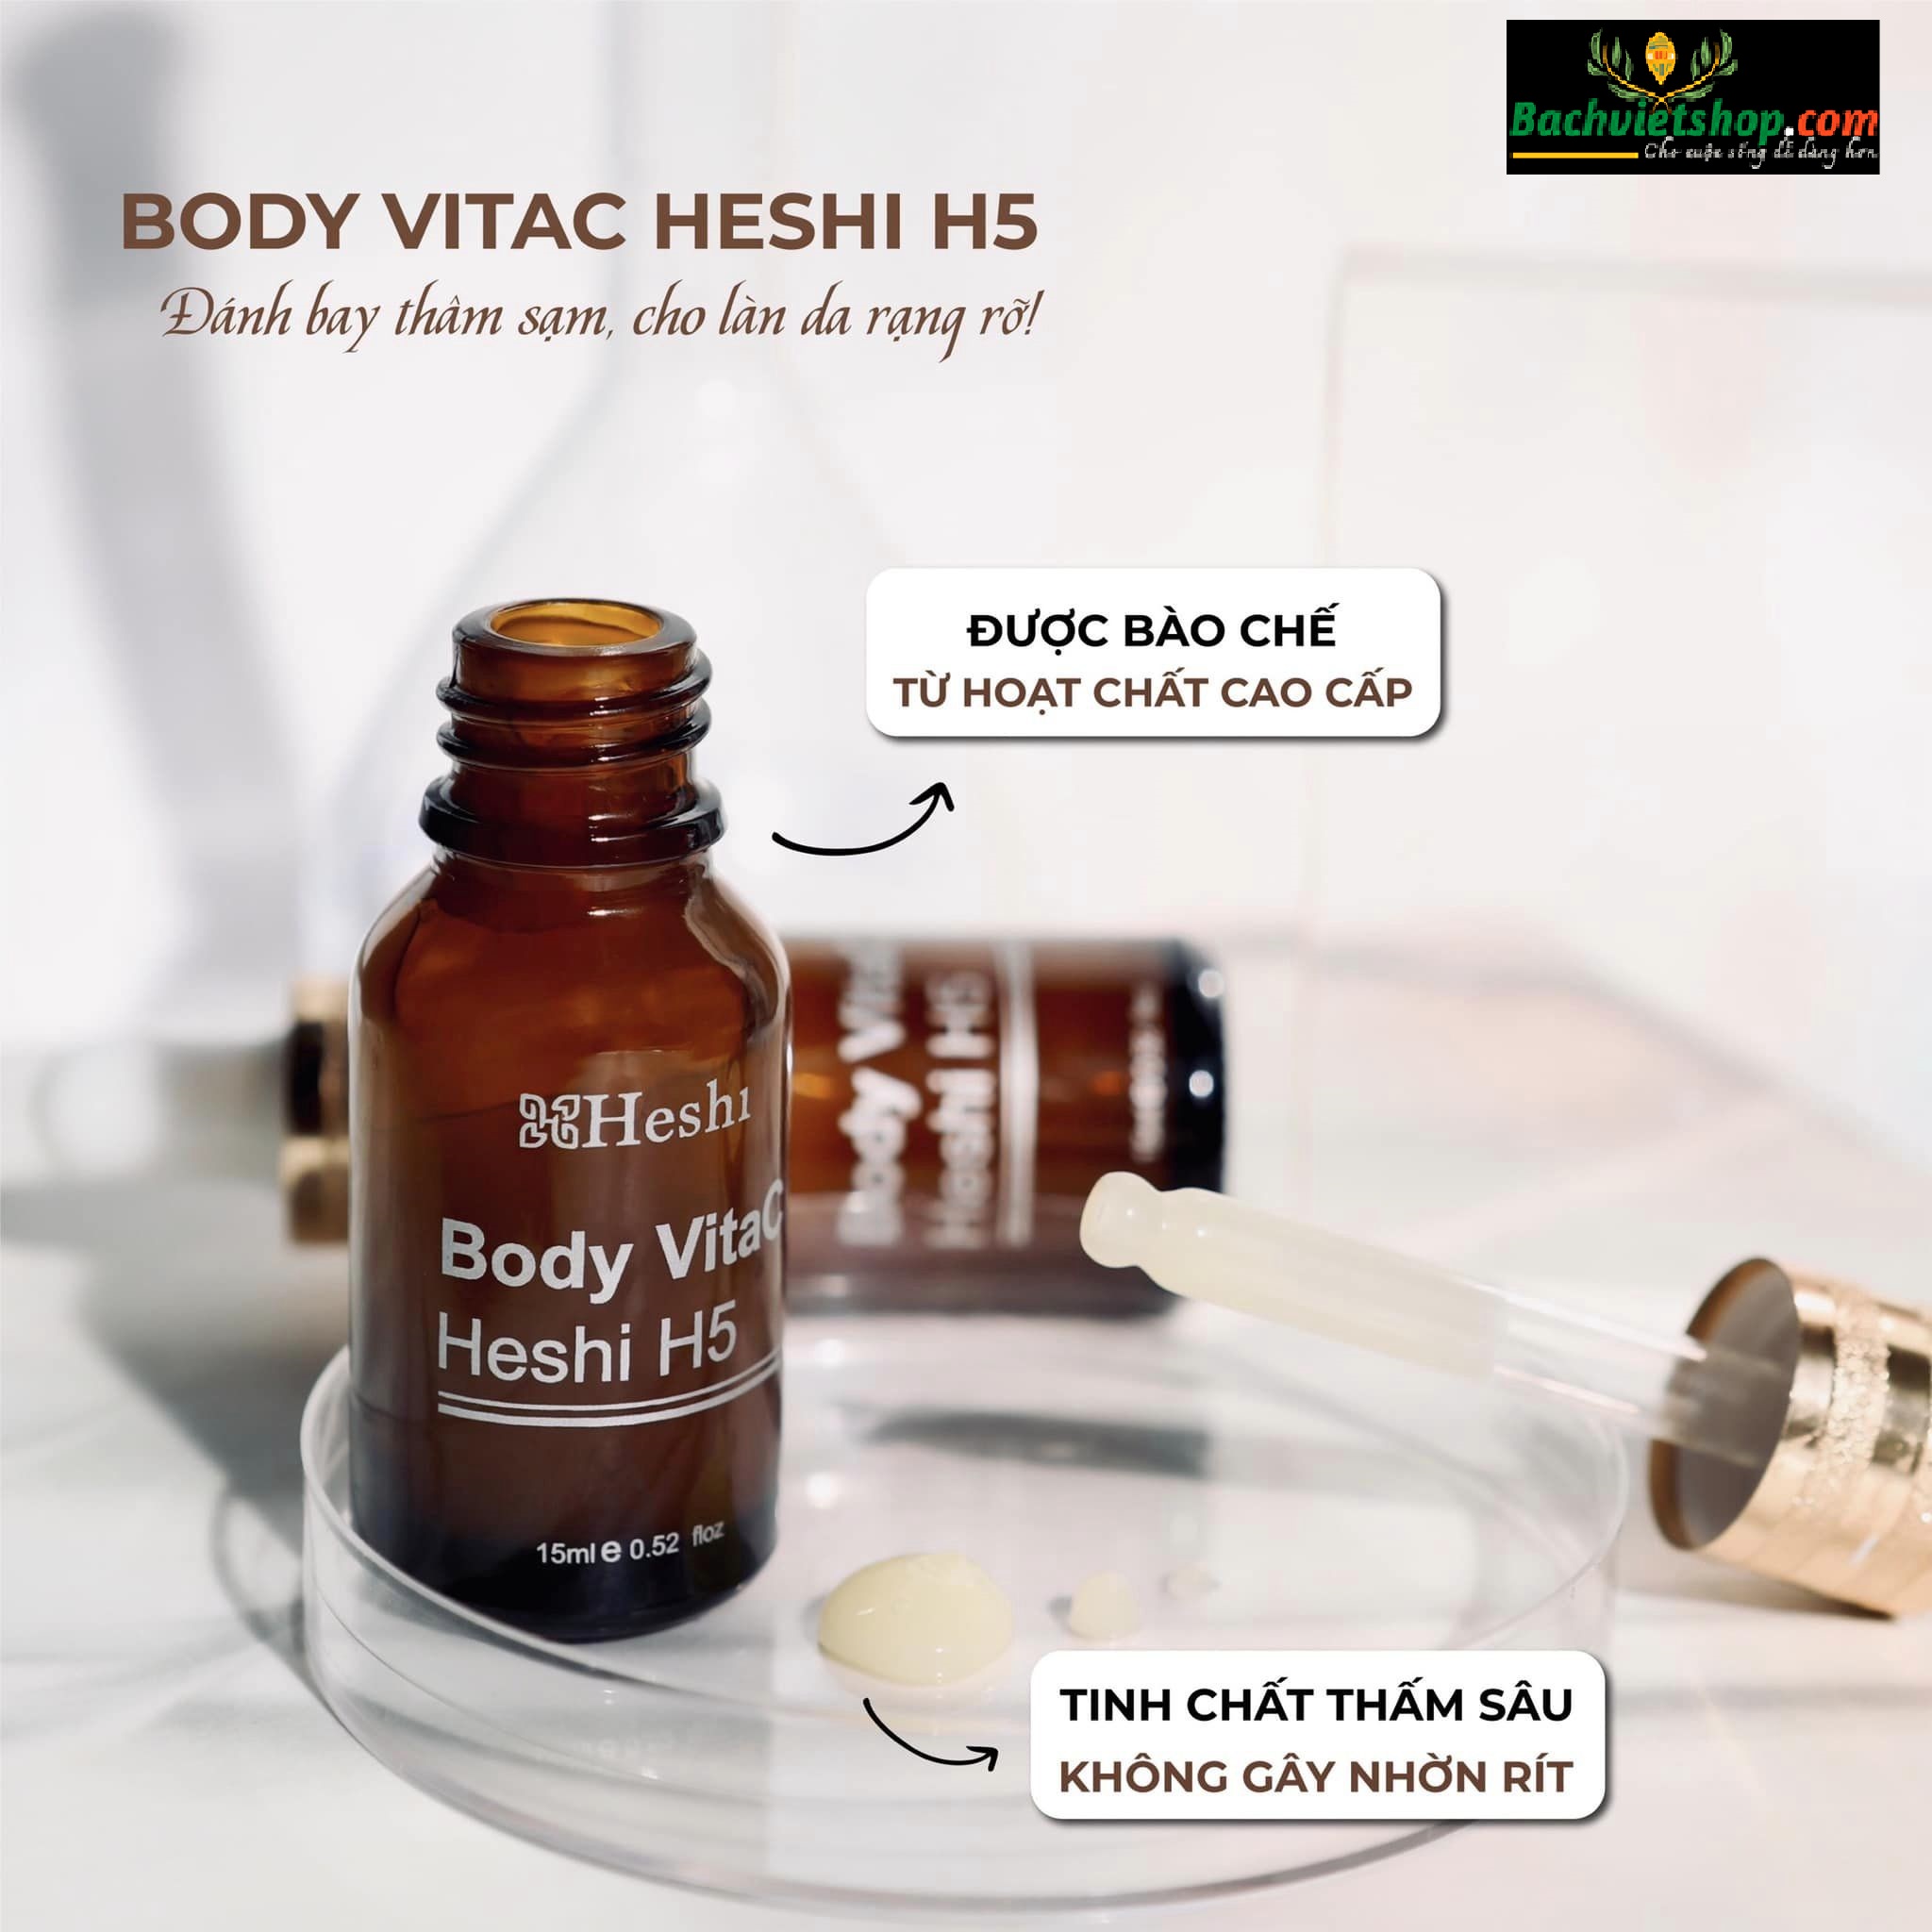 Body VitaC Heshi H5 - Thâm đâu trị đó - Đã dùng là sẽ hết thâm - Không hết hoàn tiền